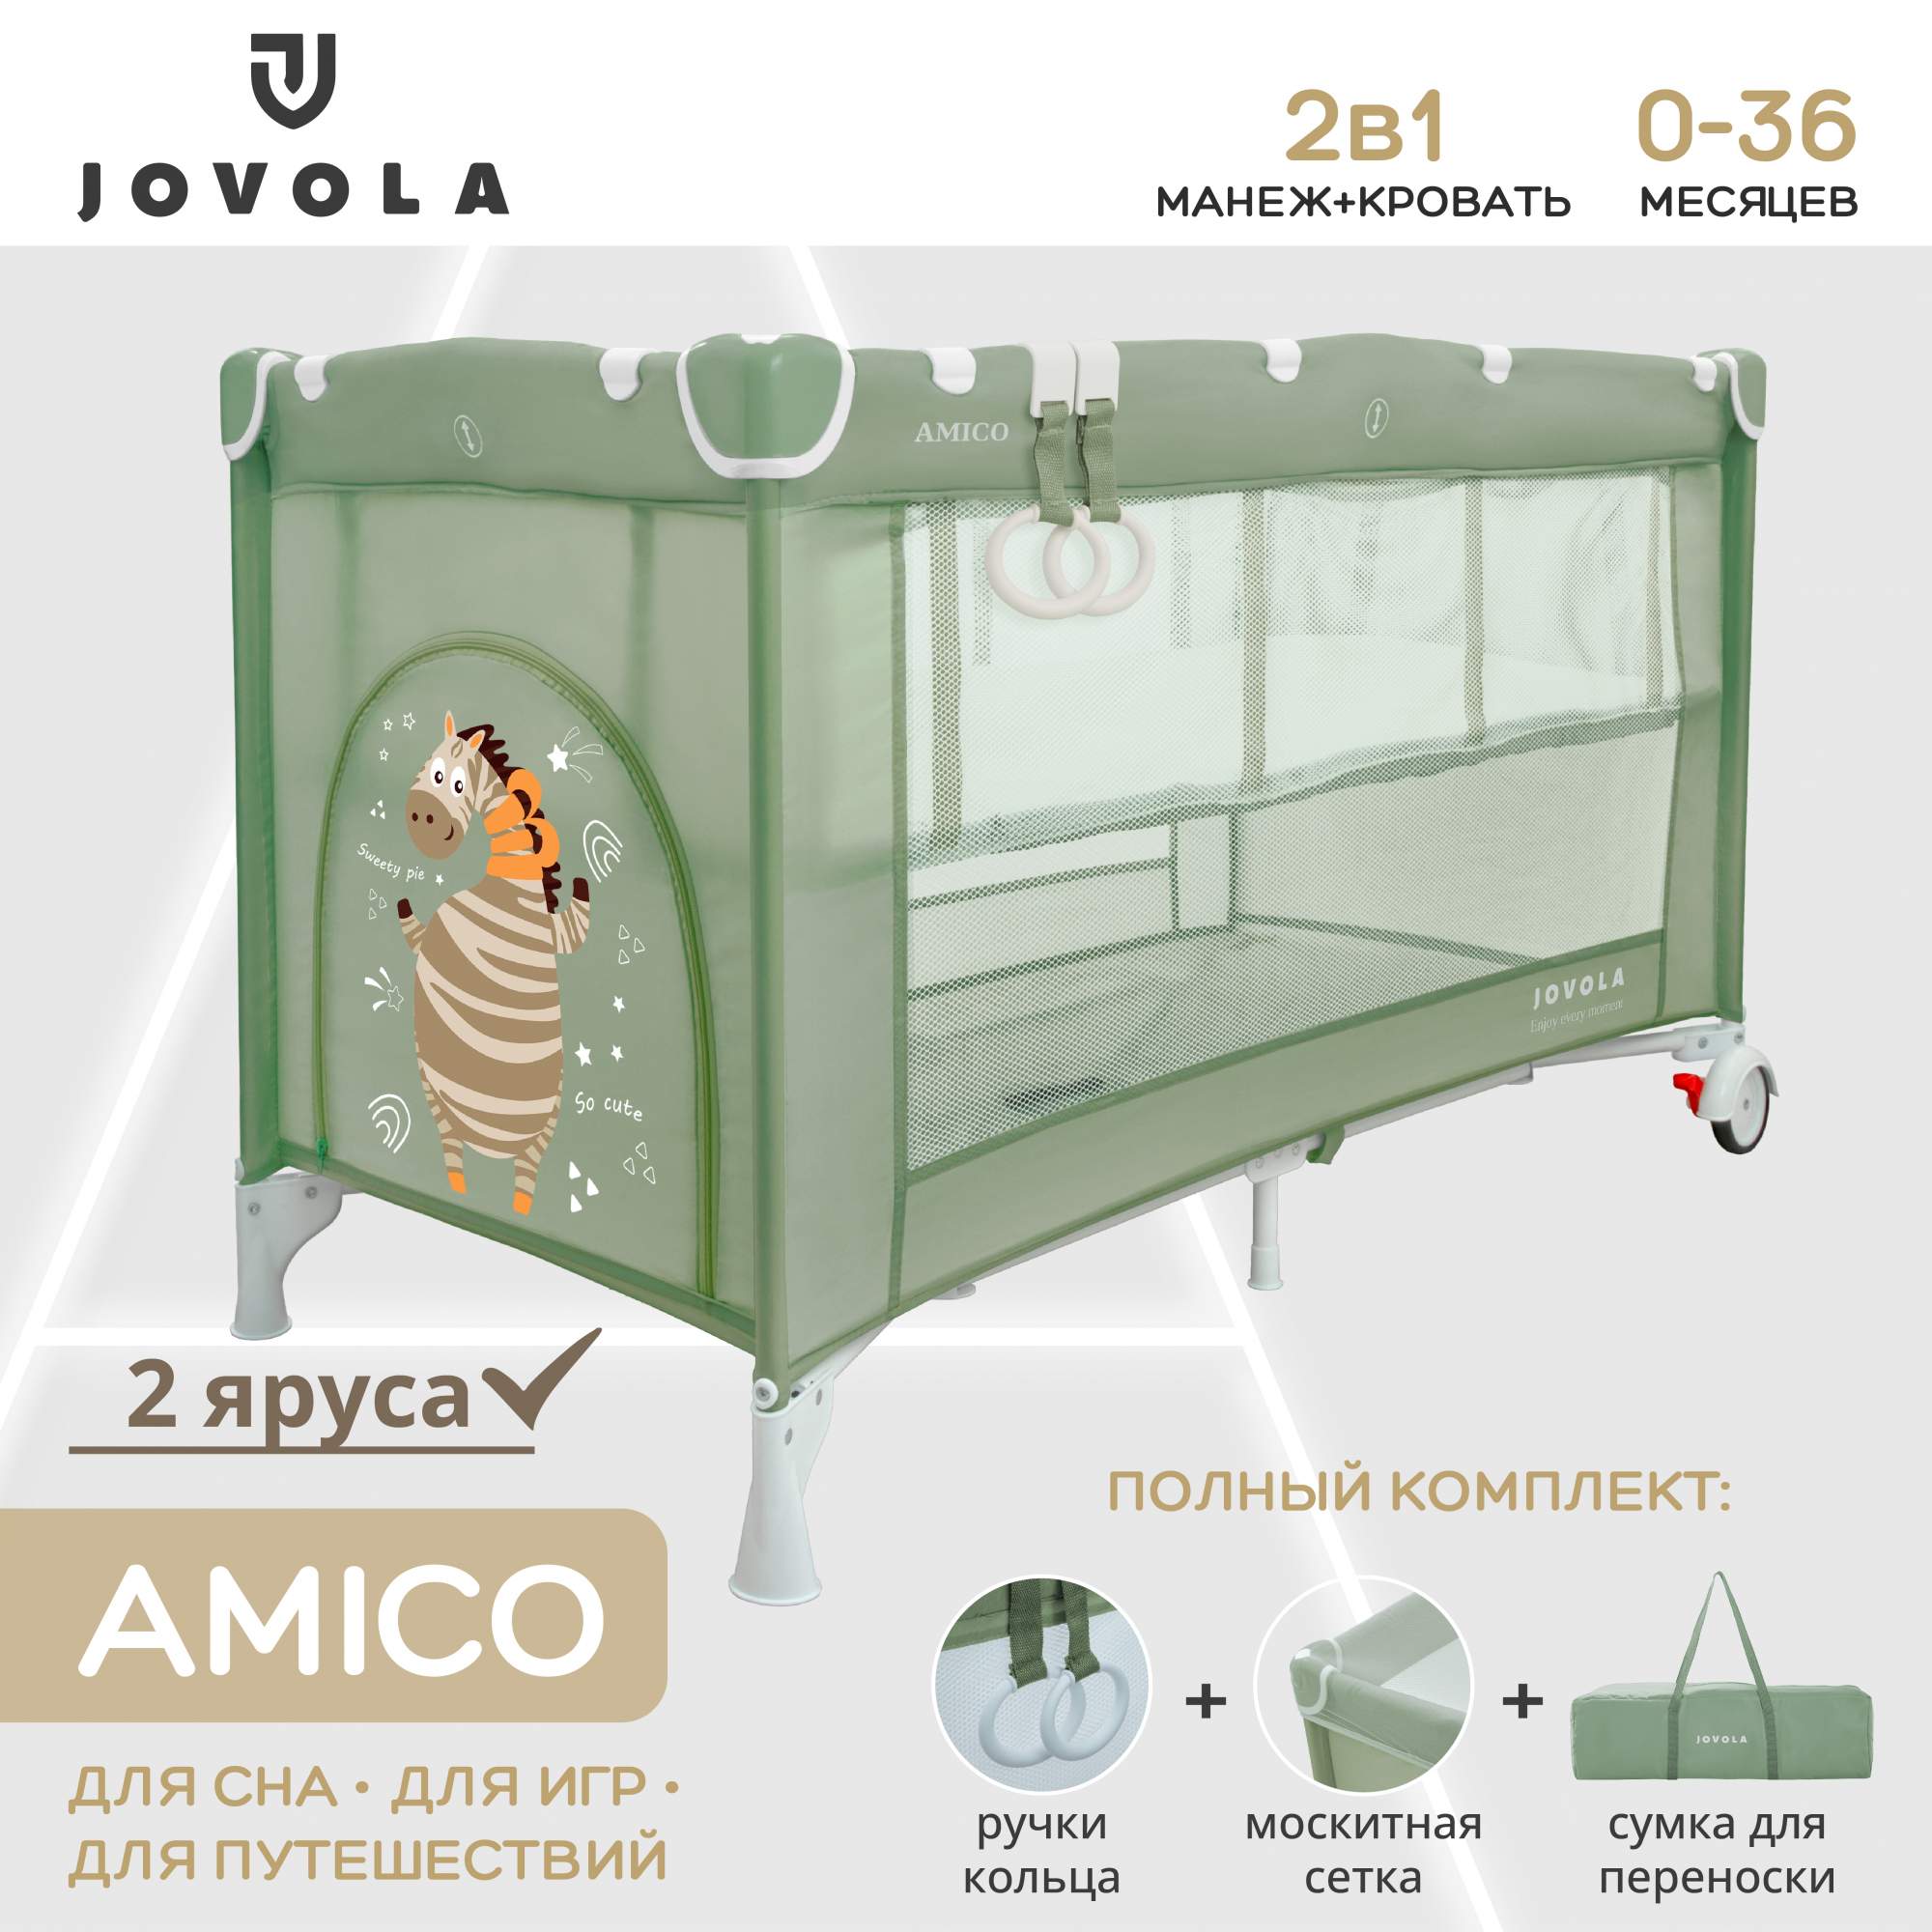 Манеж кровать детский JOVOLA AMICO для новорожденных складной 2 уровня зеленый манеж детский cam sonno teddy g 247